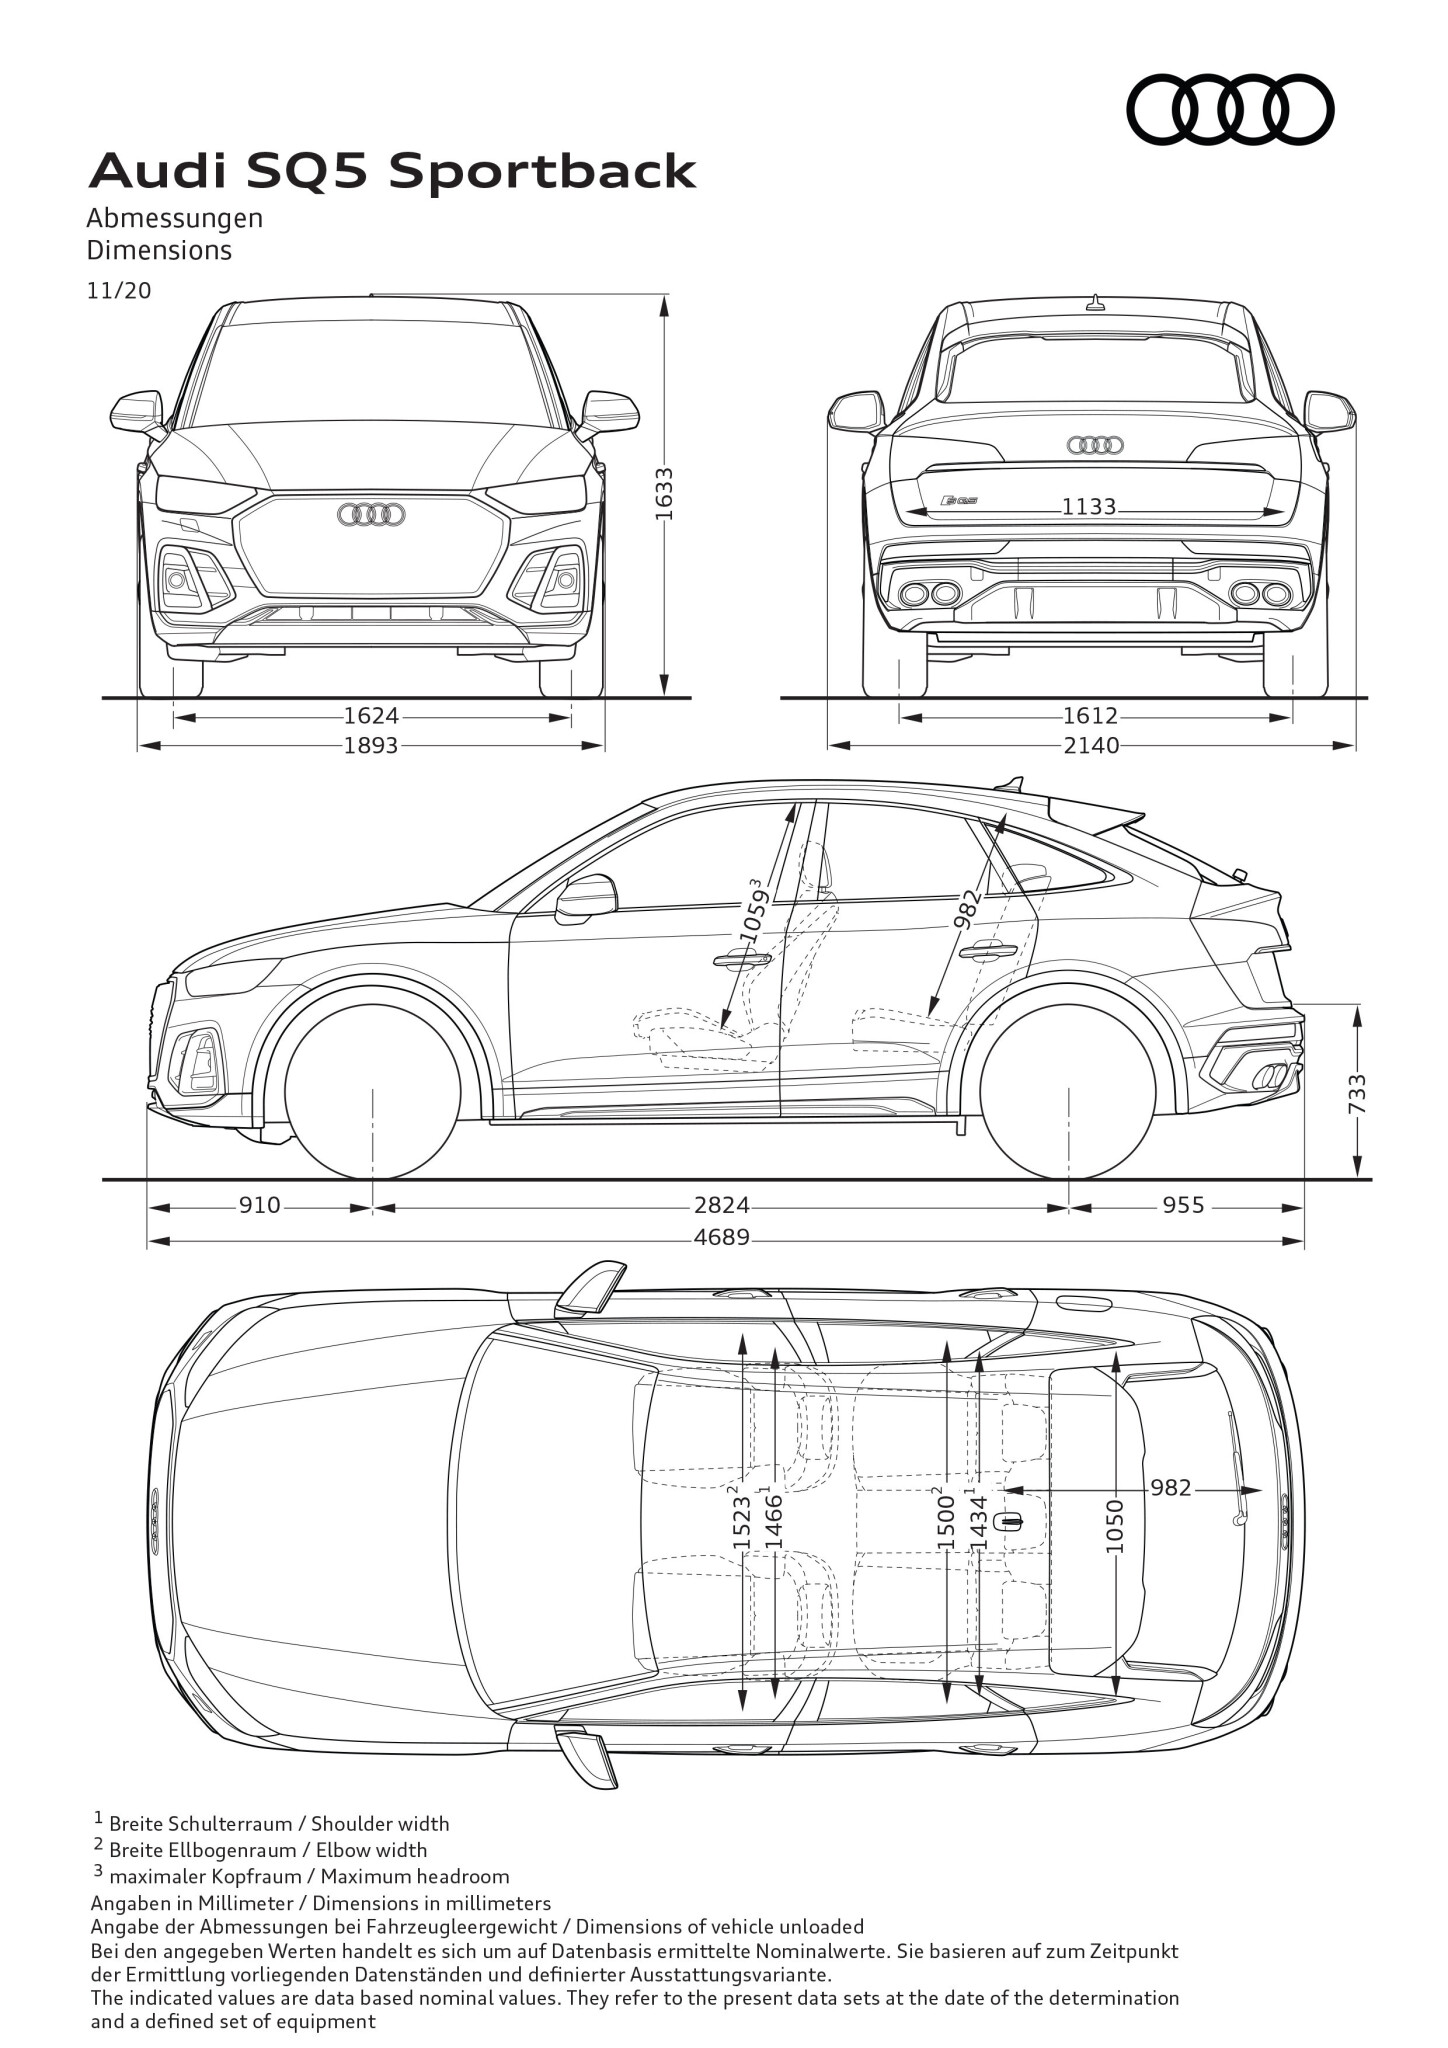 Audi SQ5 Sportback TDI medidas